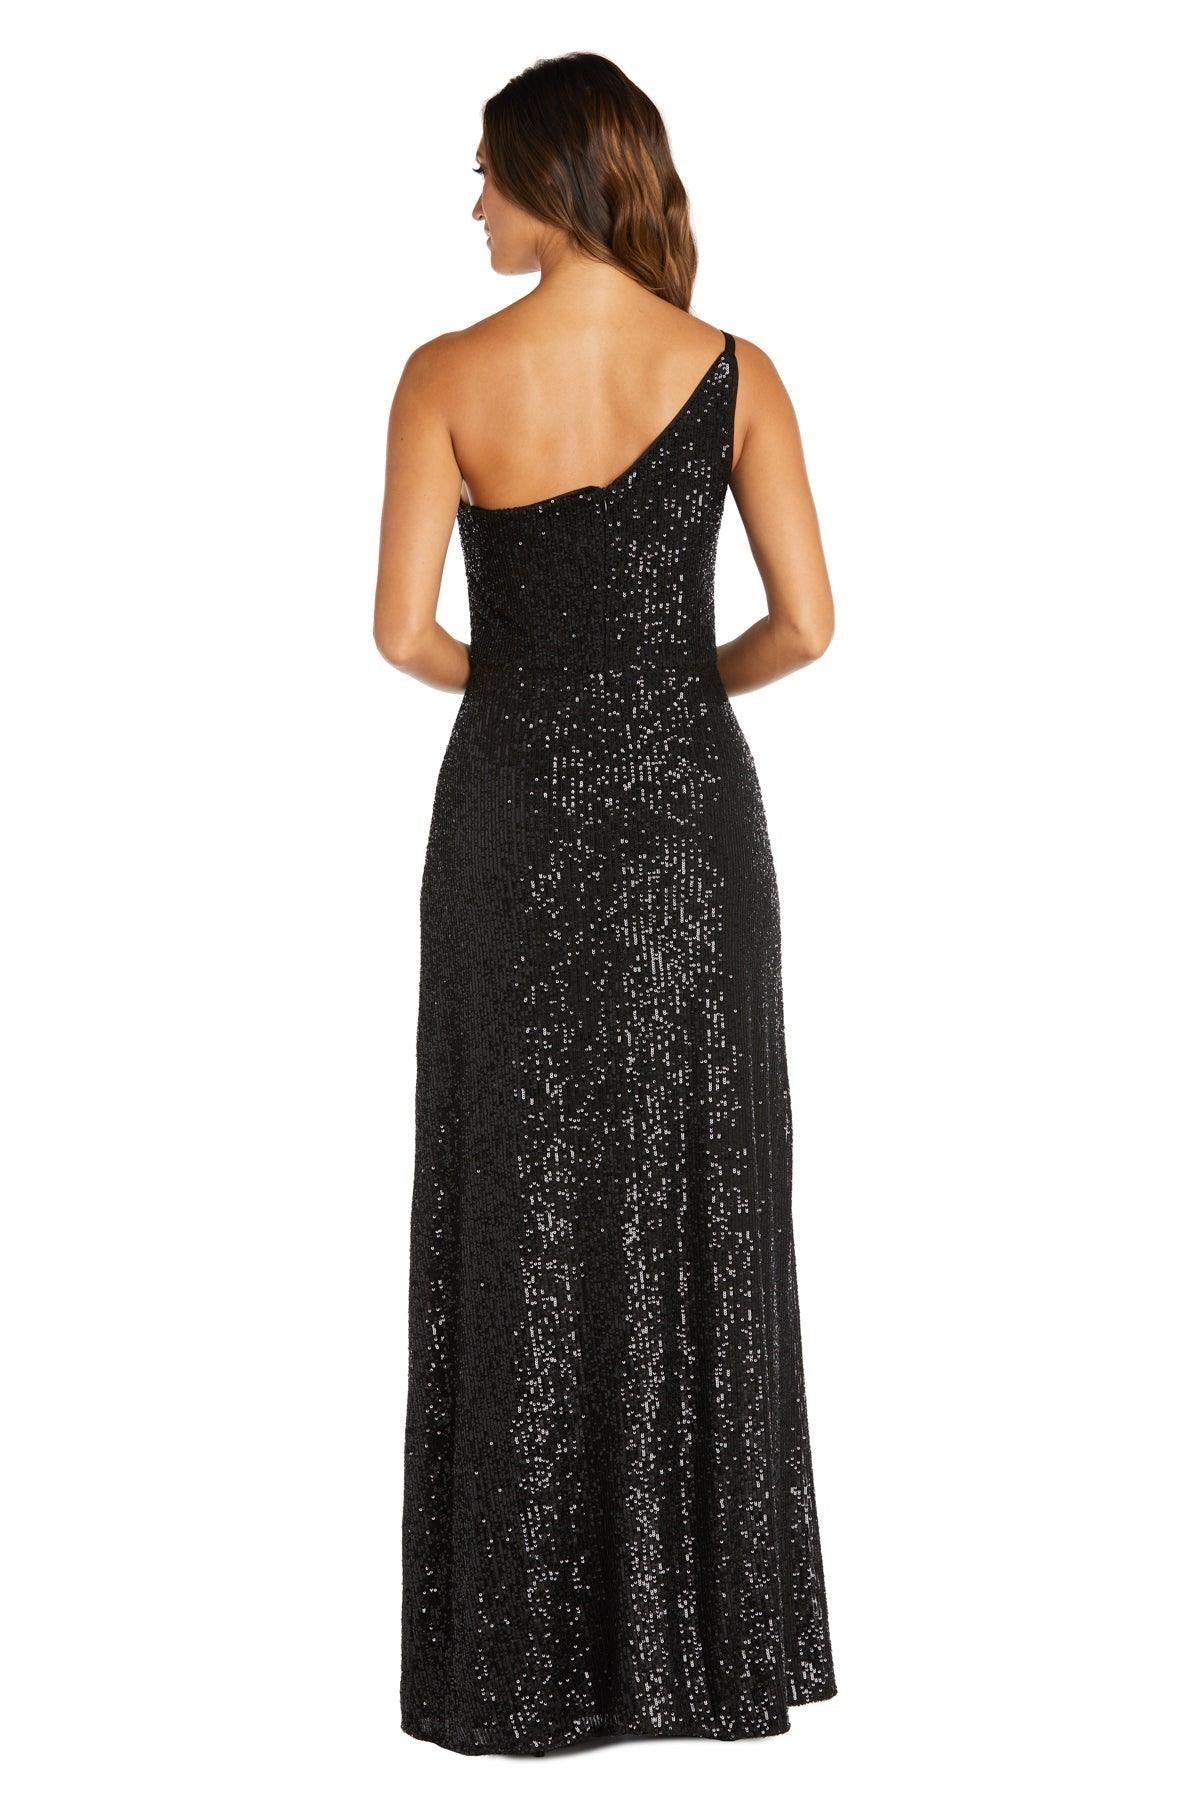 Nightway Long One Shoulder Formal Dress 22121 | The Dress Outlet